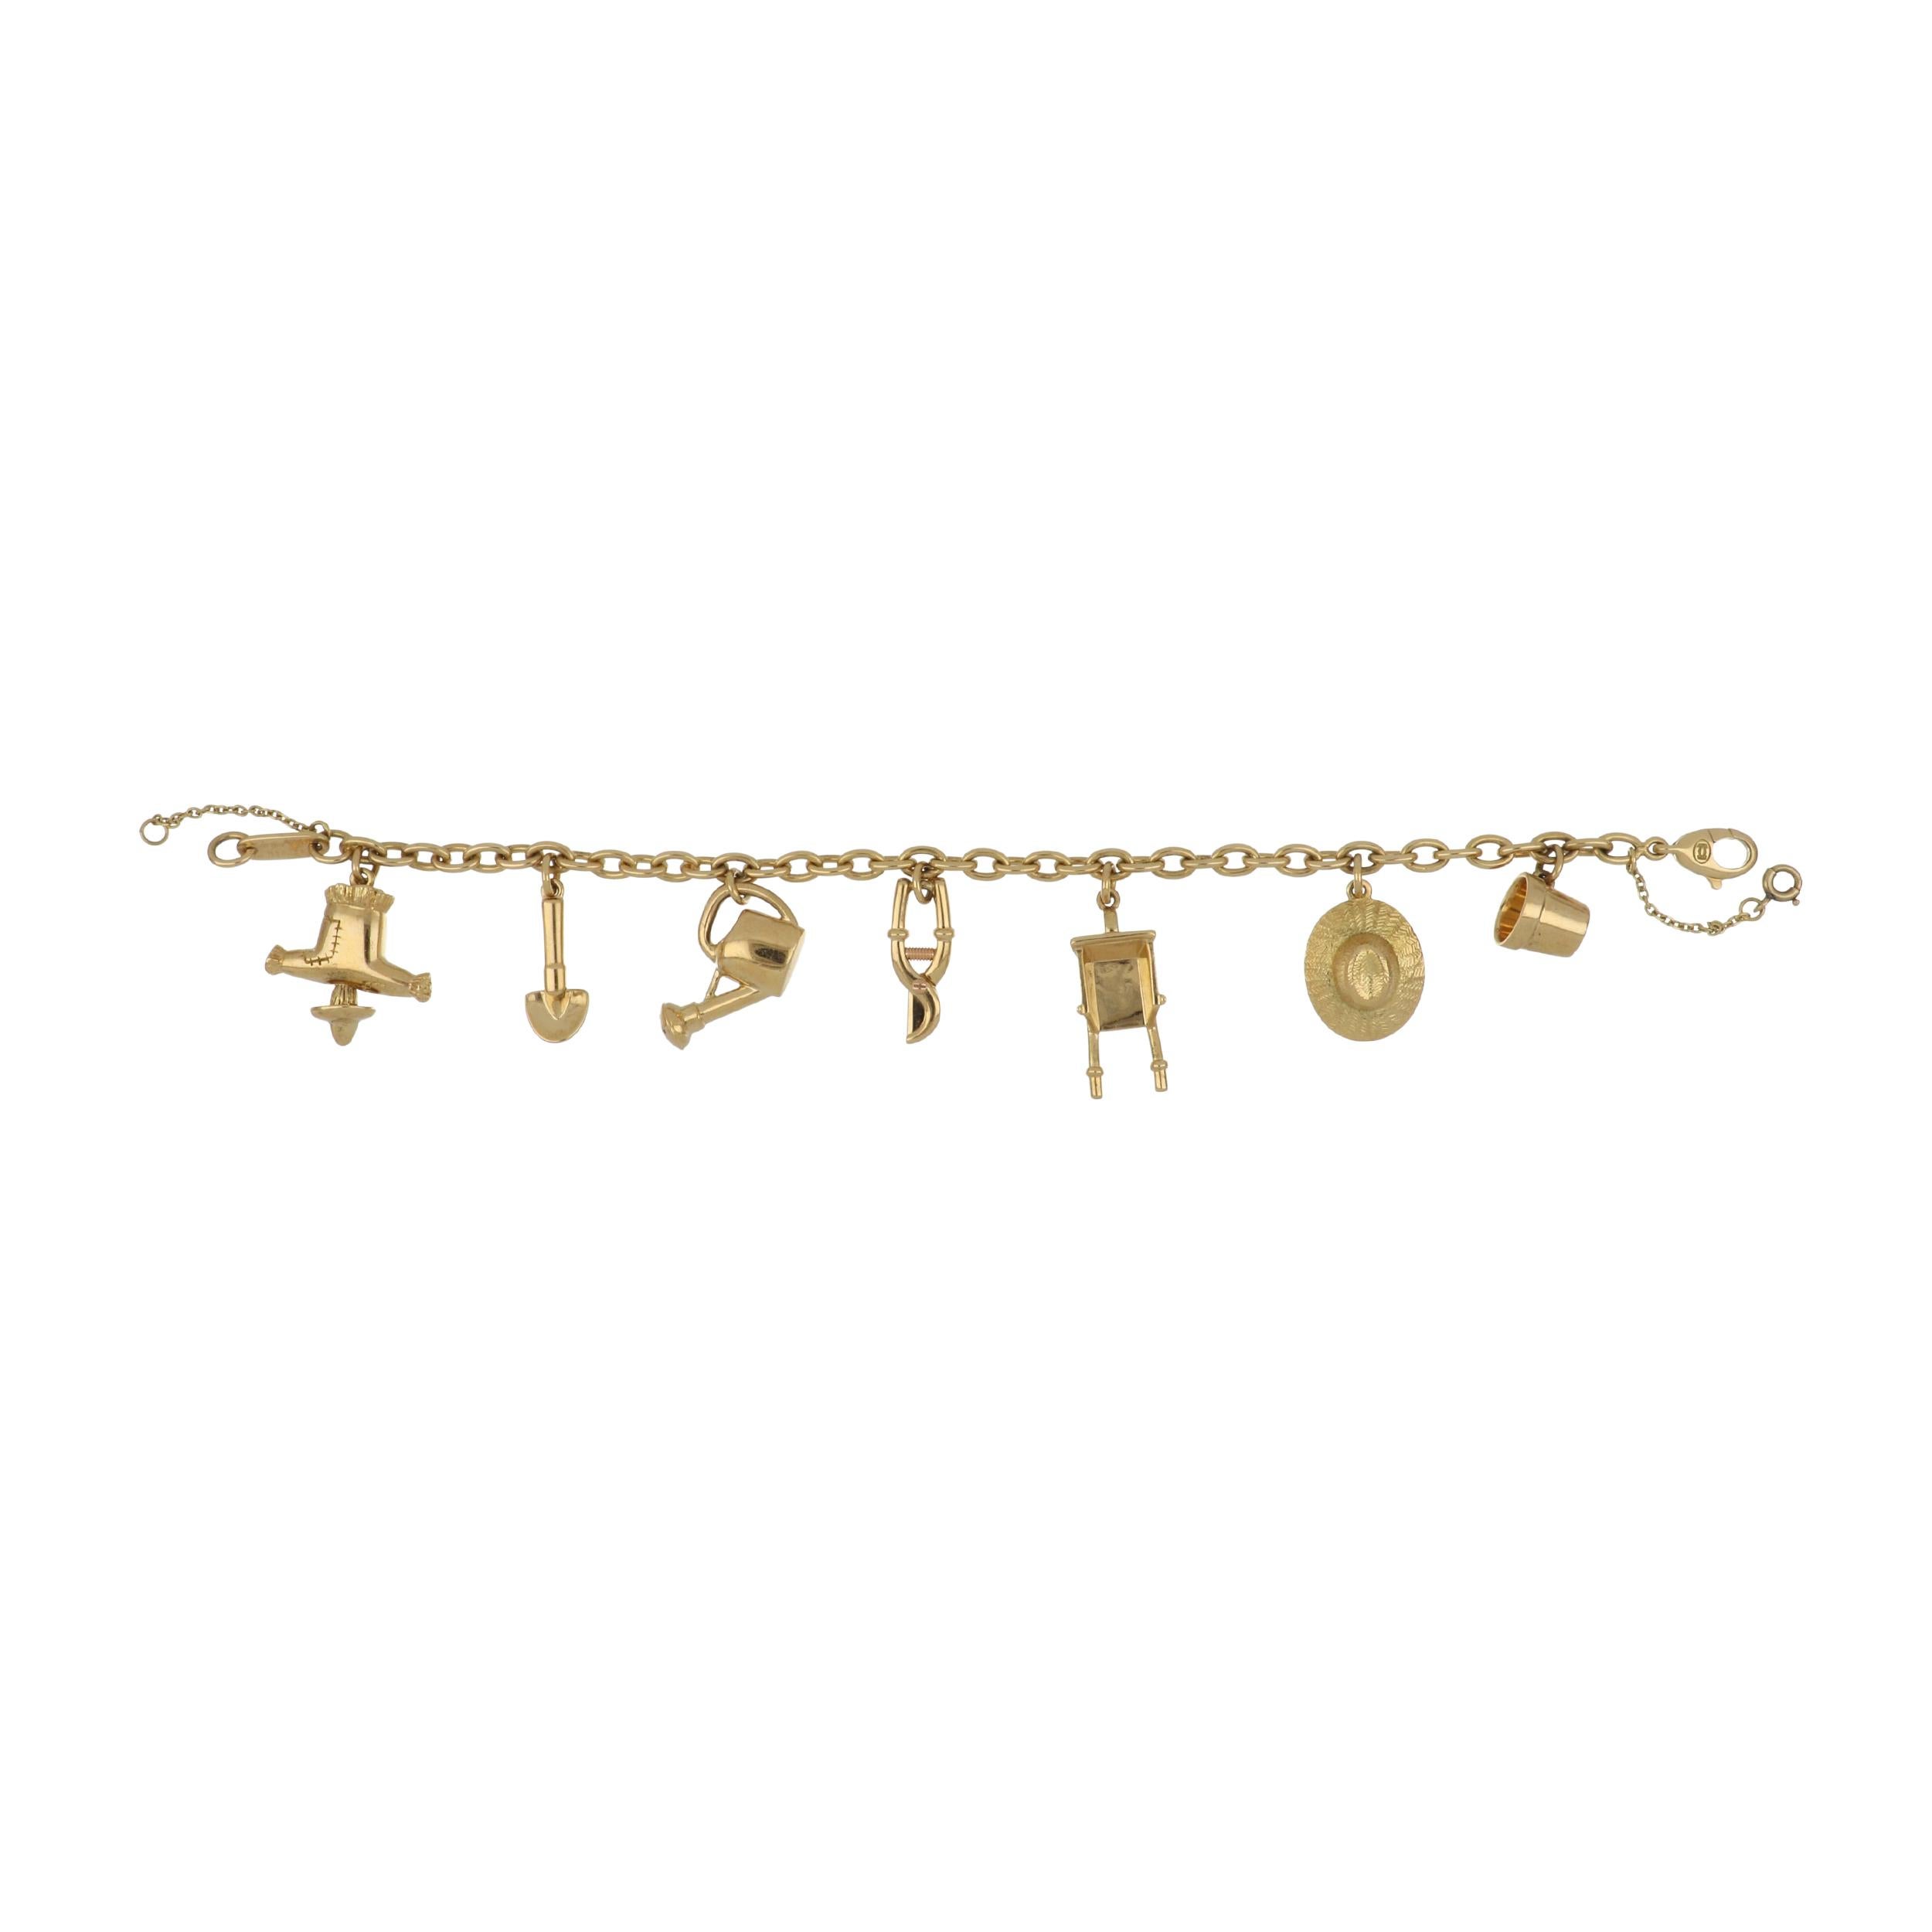 Ein Vintage Cartier 18K Gelbgold Charme-Armband mit Gärtner Motiv charms. Zu den Charms gehören eine Vogelscheuche, ein Spaten, eine Gießkanne, eine Baumschere, eine Schubkarre, ein breitkrempiger Hut und ein Blumentopf. Datiert 1994. Das Armband